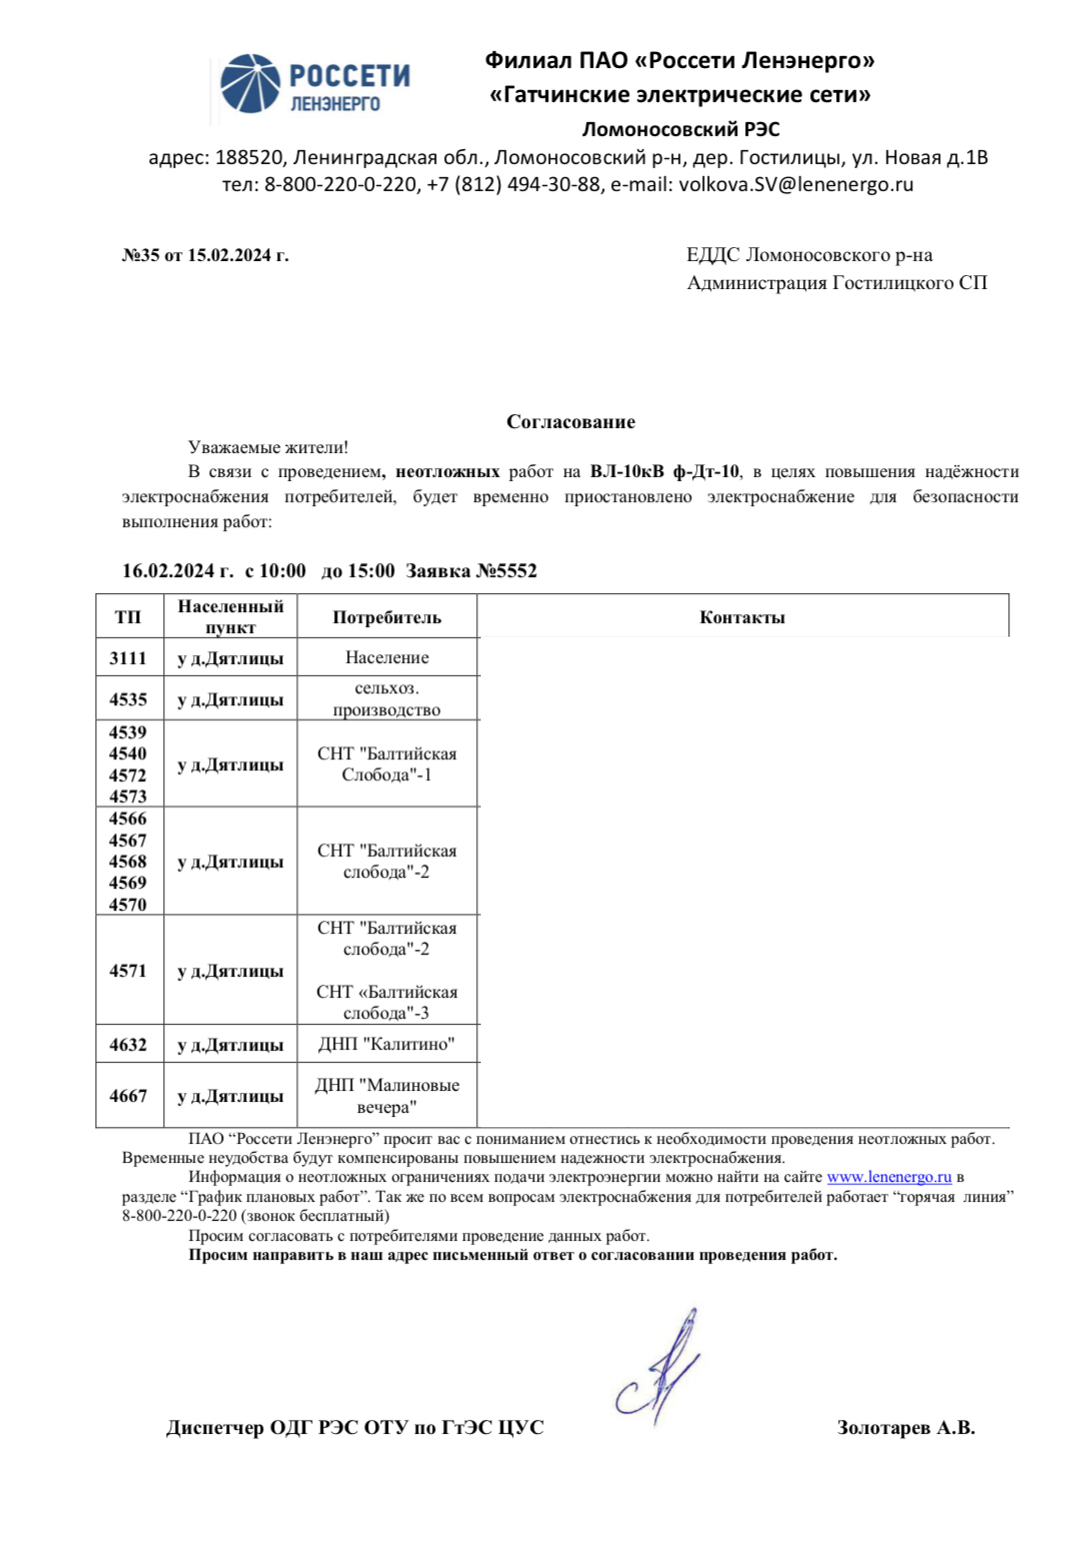 Уведомление о проведении плановых работ на ПС "Дятлицы" 35 от 15.02.2024 г.